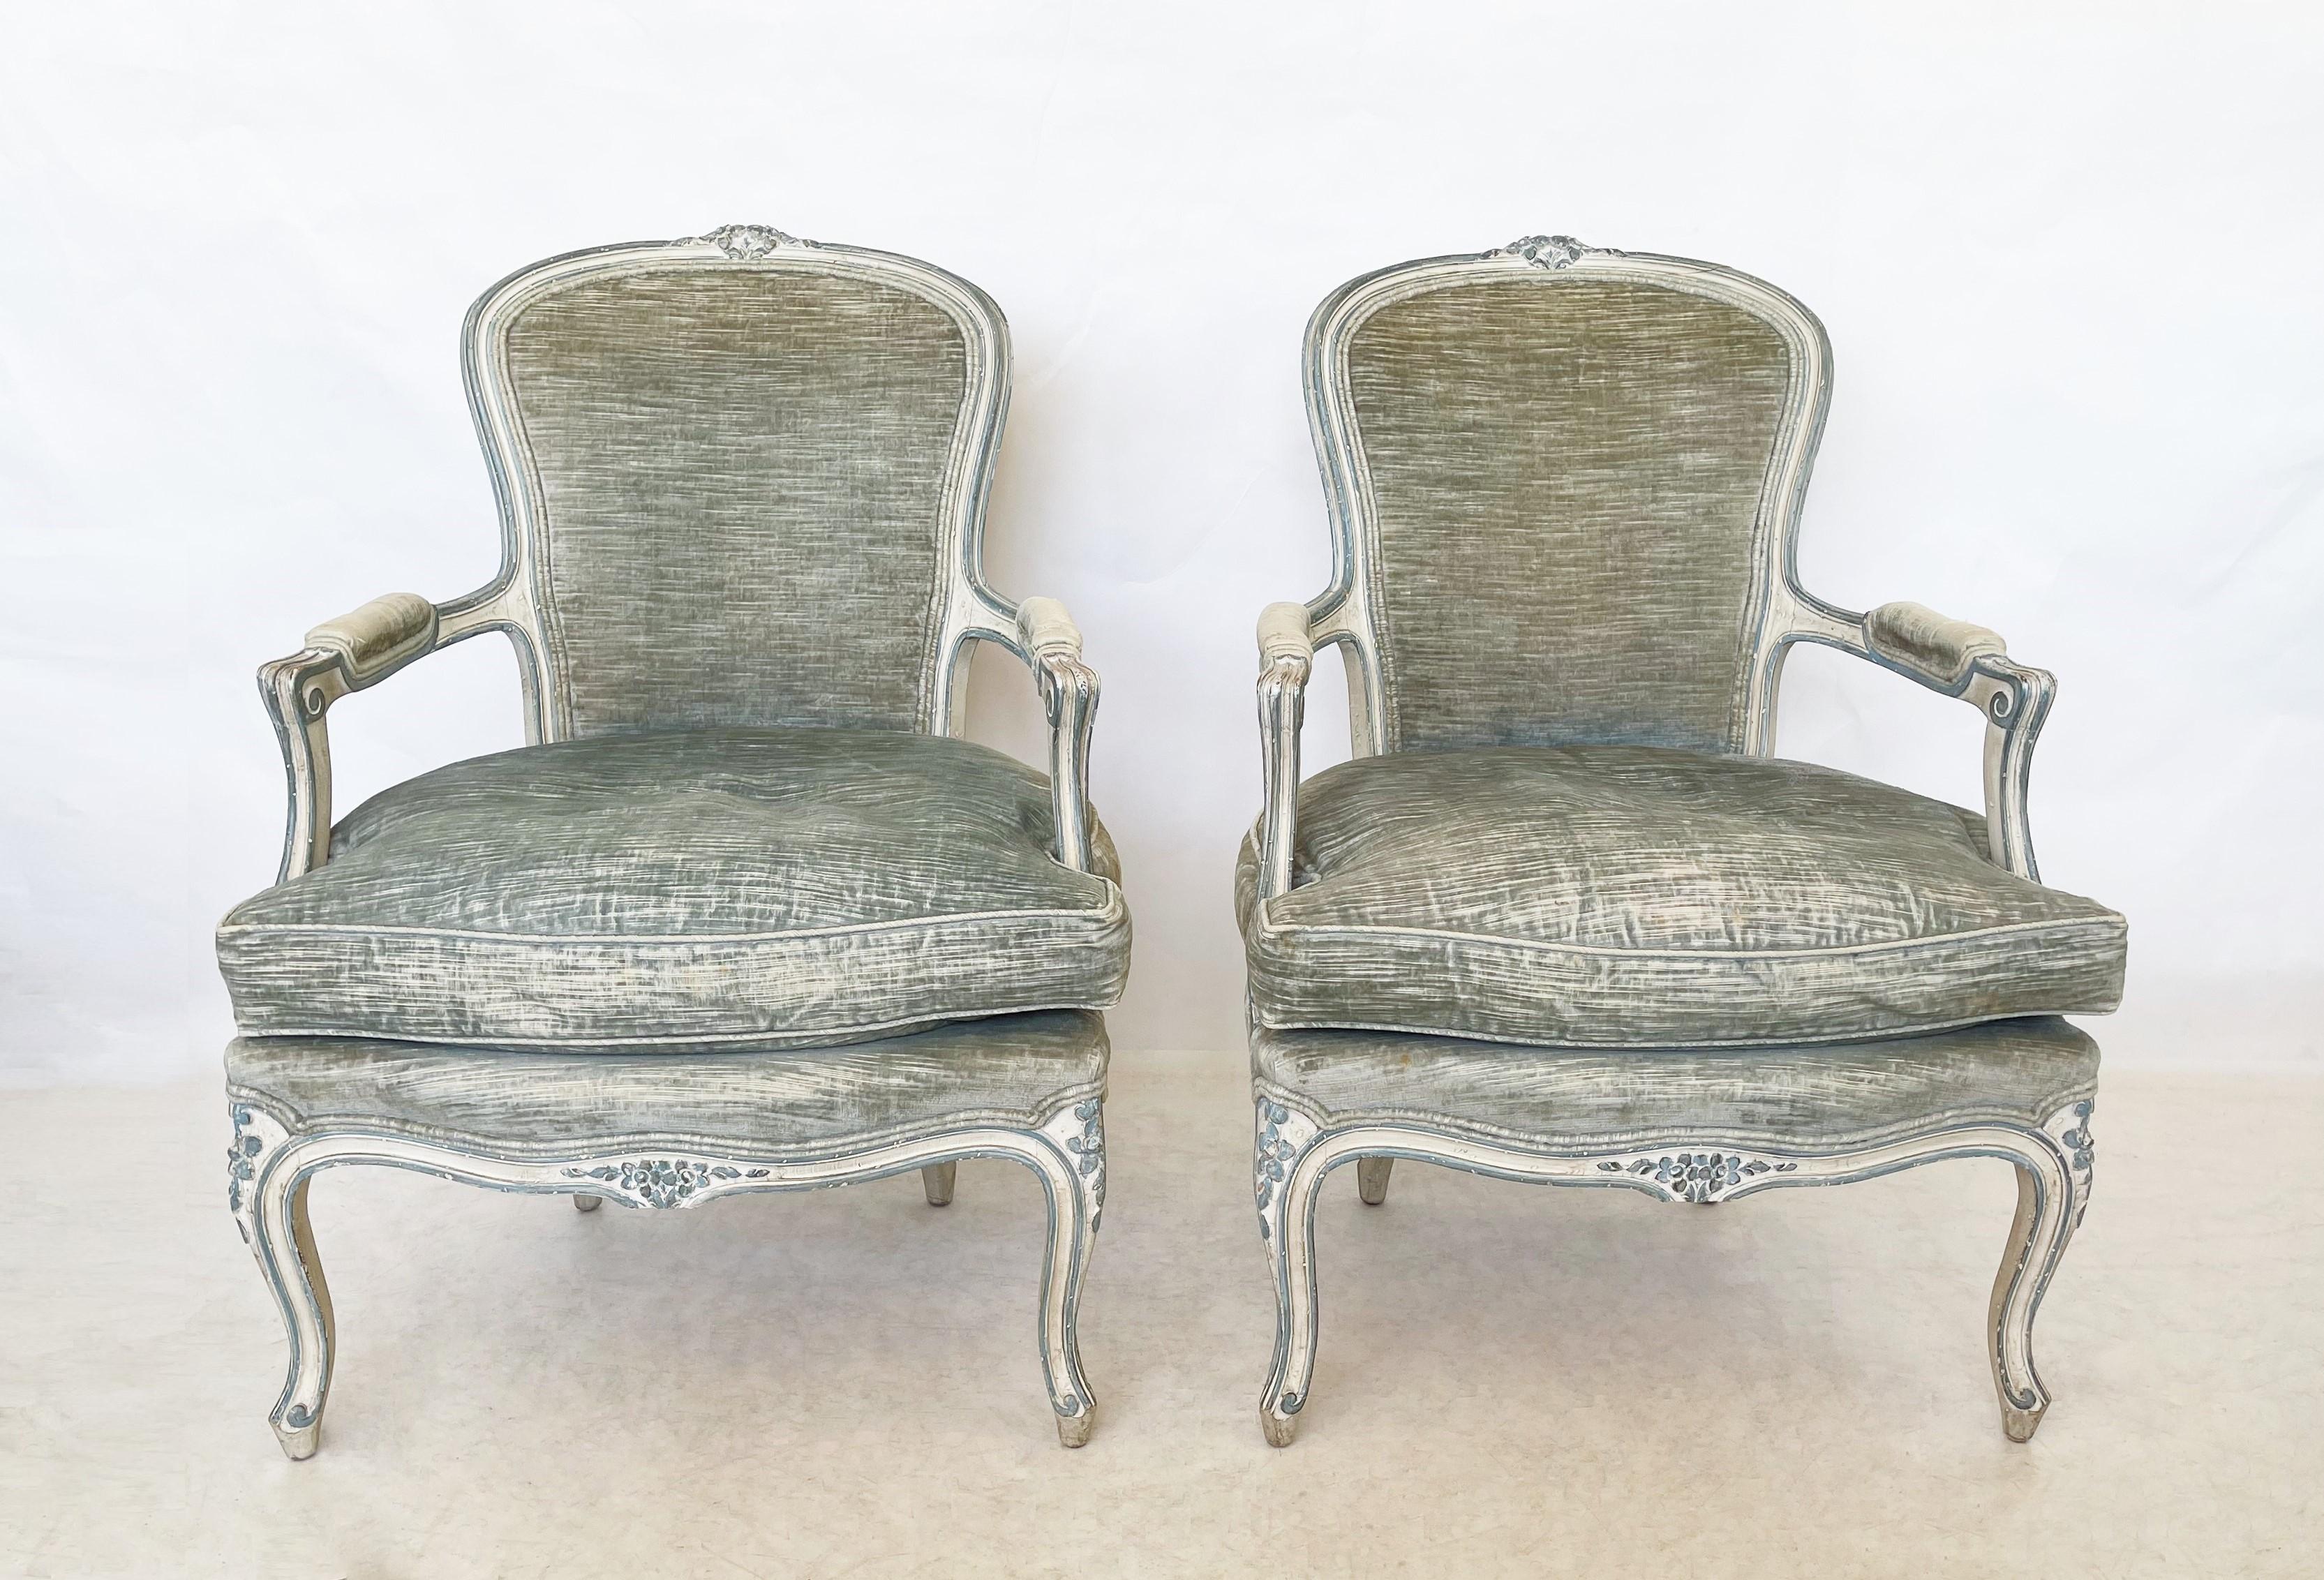 Zwei prächtige geschnitzte Bergsteigerstühle aus der Zeit Ludwigs XV. Jeder Stuhl verfügt über einen handbemalten Holzrahmen, eine geschwungene Rückenlehne und ein geschnitztes Blumenwappen. Diese Rückenlehne geht nahtlos in die offenen,